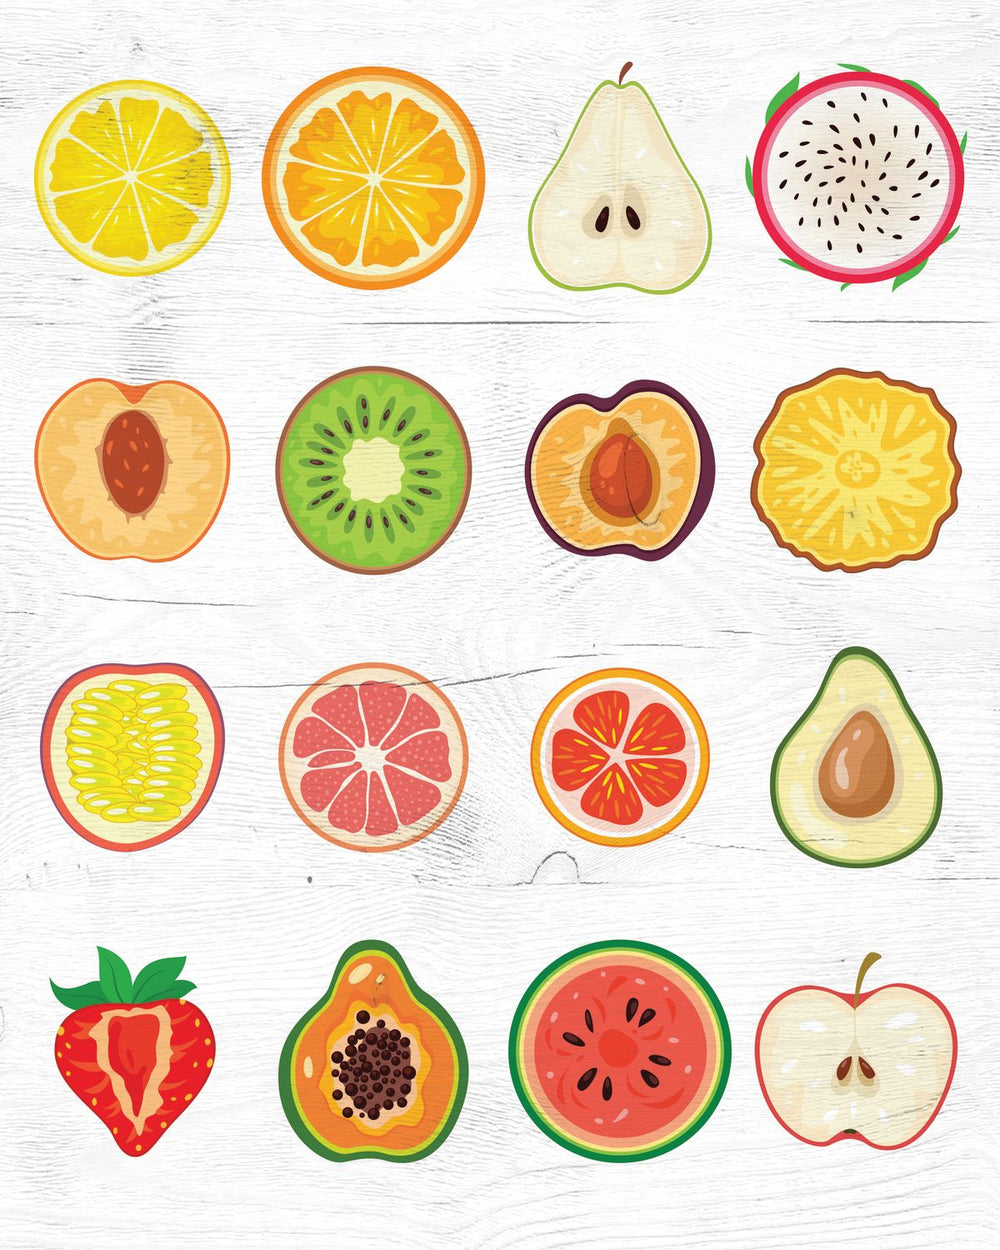 Fruits Chart